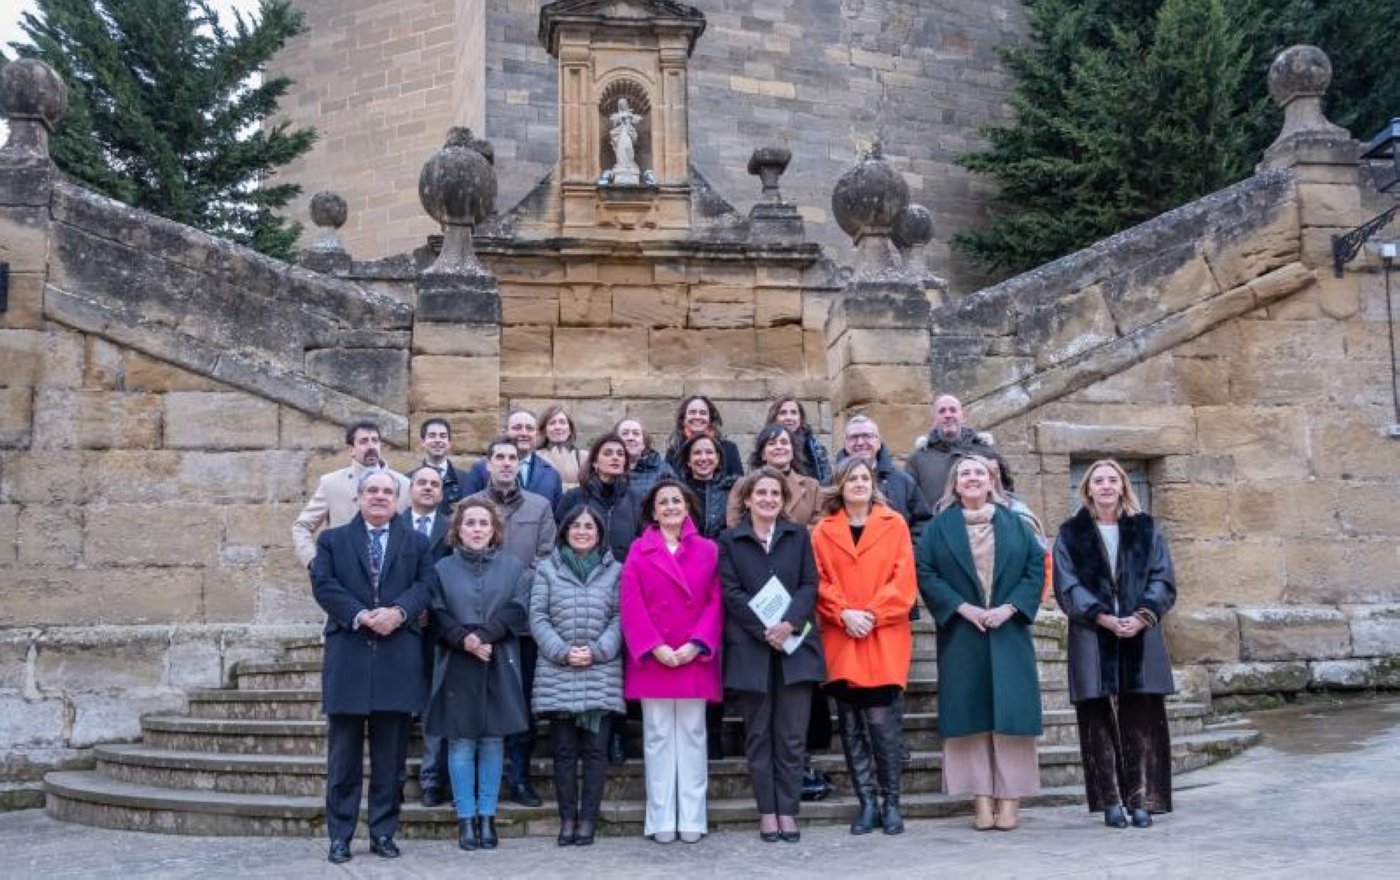 Foto de famiia en la localidad riojalteña, con las ministras en primera fila, junto a la presidenta de La Rioja y la delegada del Gobierno. 